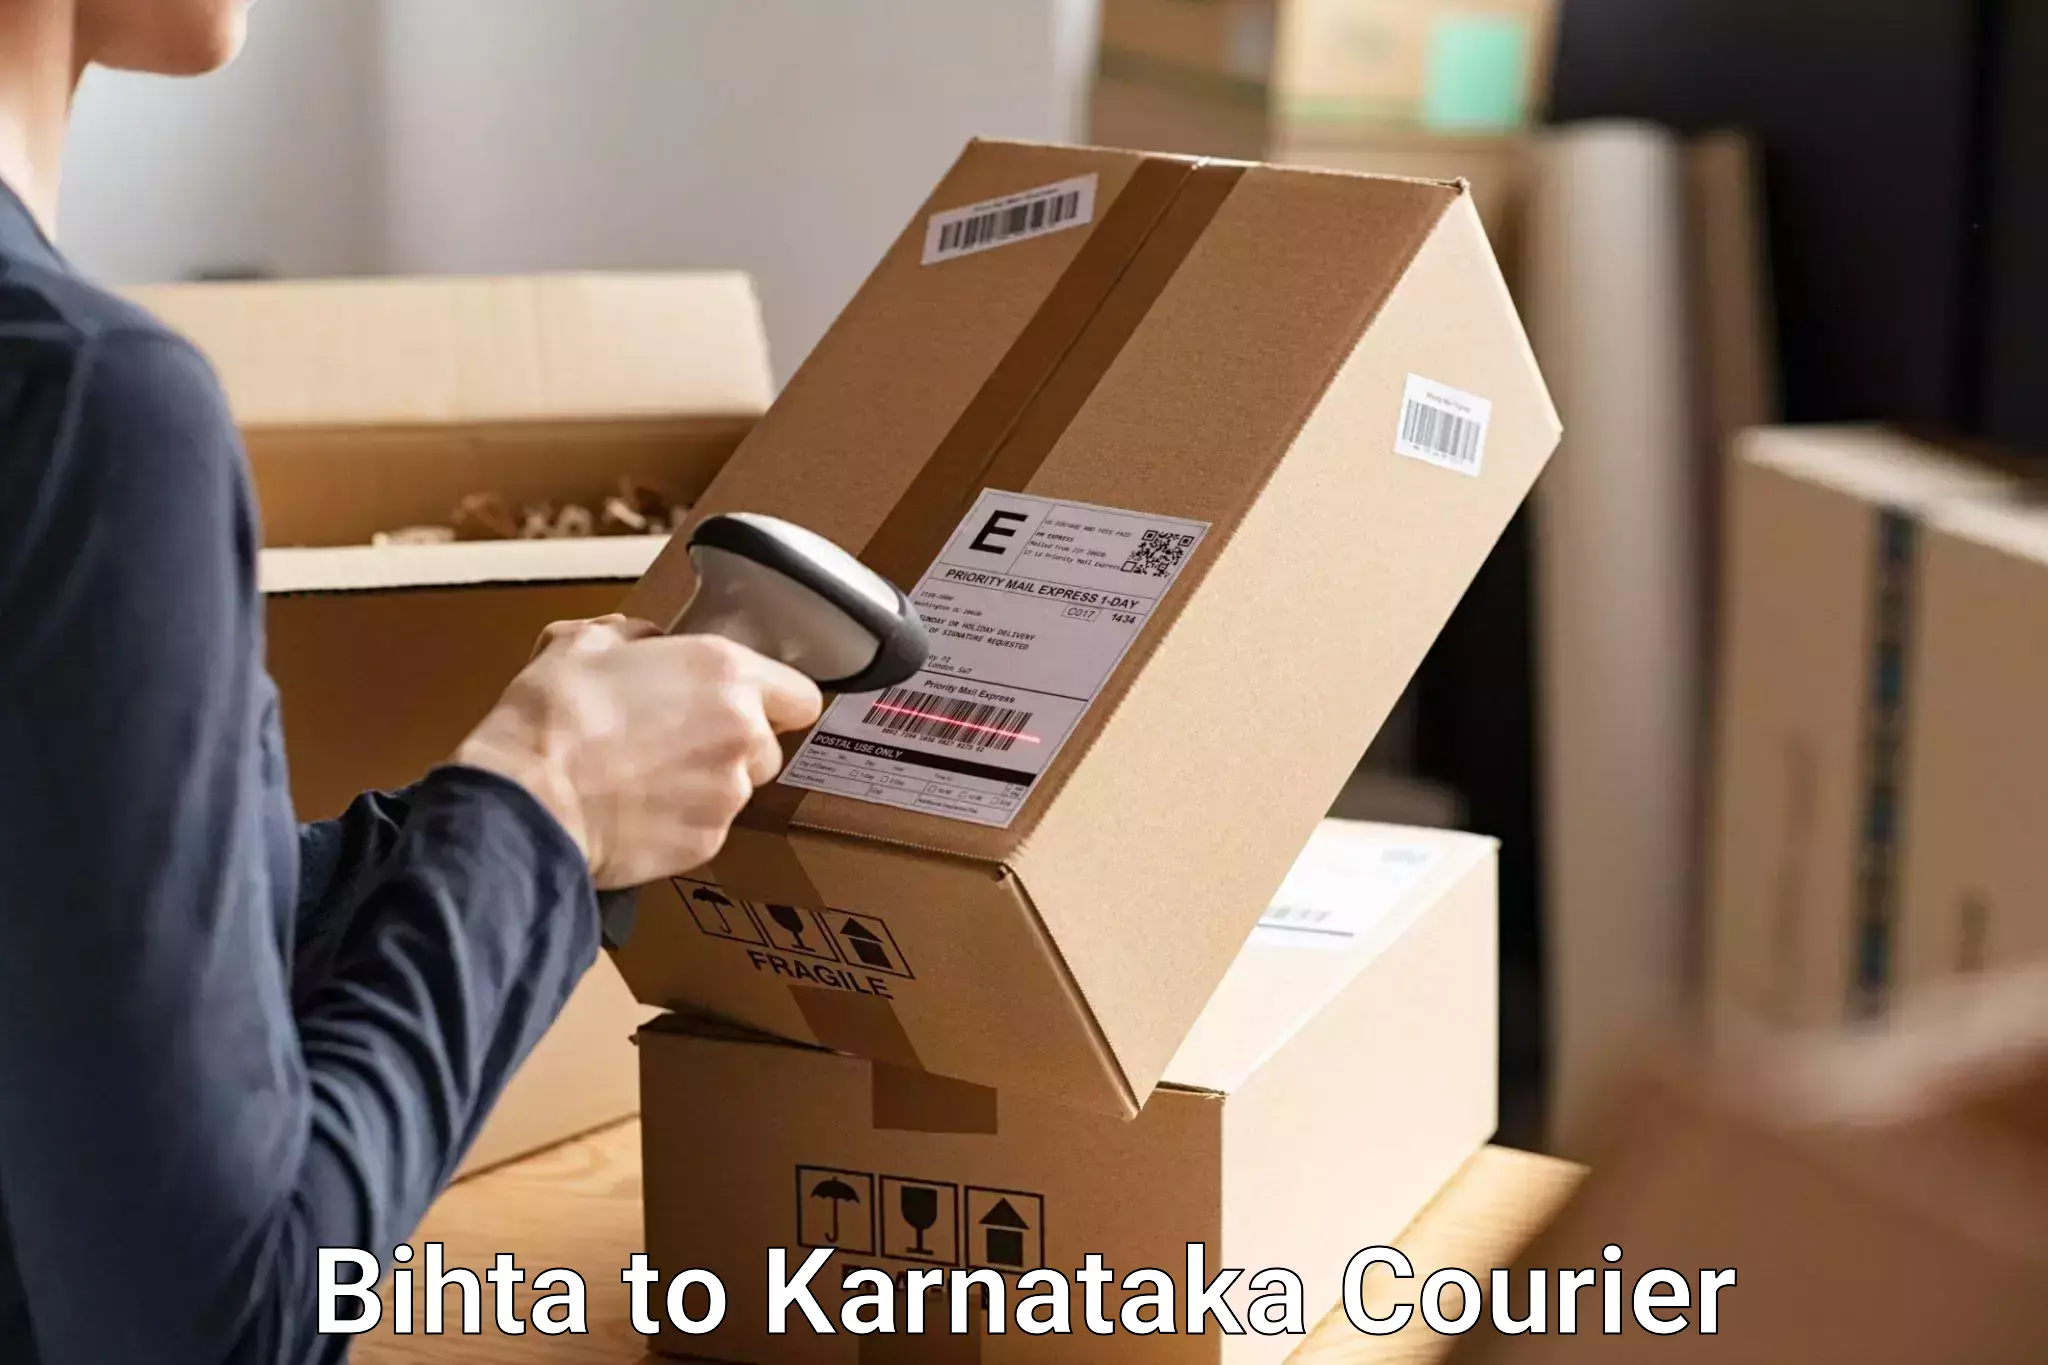 Luggage shipping discounts in Bihta to Kolar